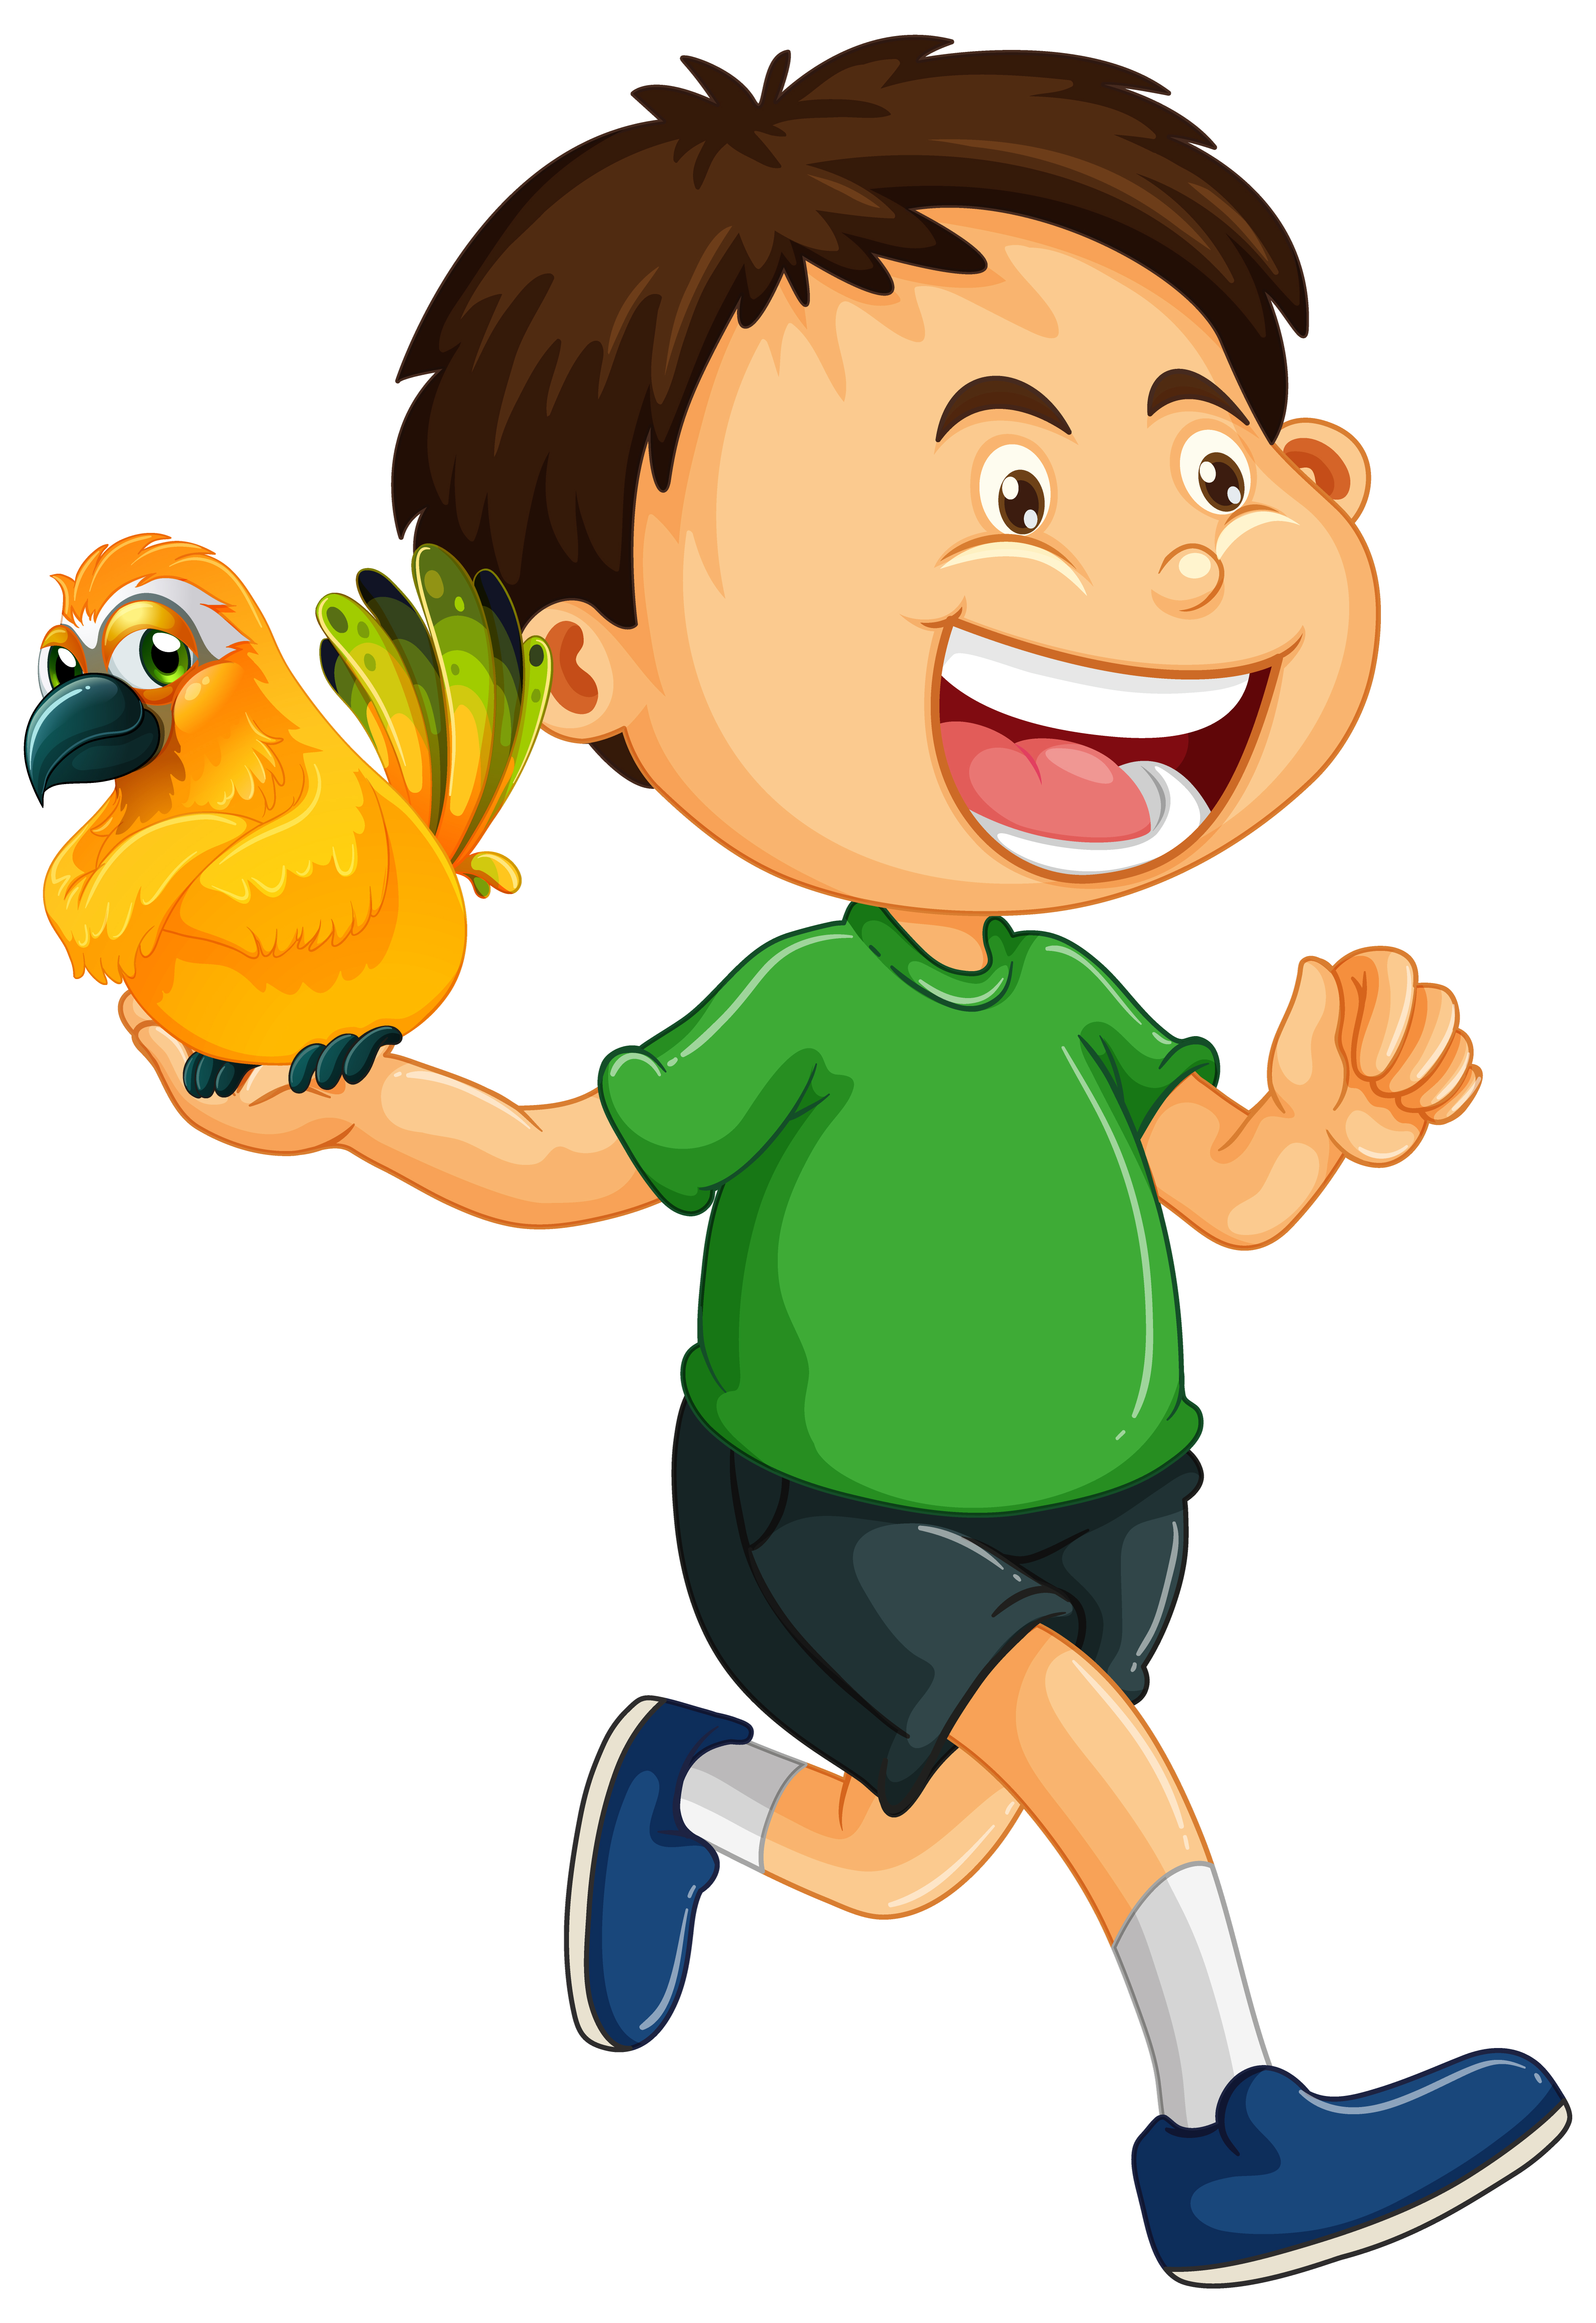 Crianças Que Apreciam O Jogo Do Papagaio, Ilustração Vetorial. Royalty Free  SVG, Cliparts, Vetores, e Ilustrações Stock. Image 90824490